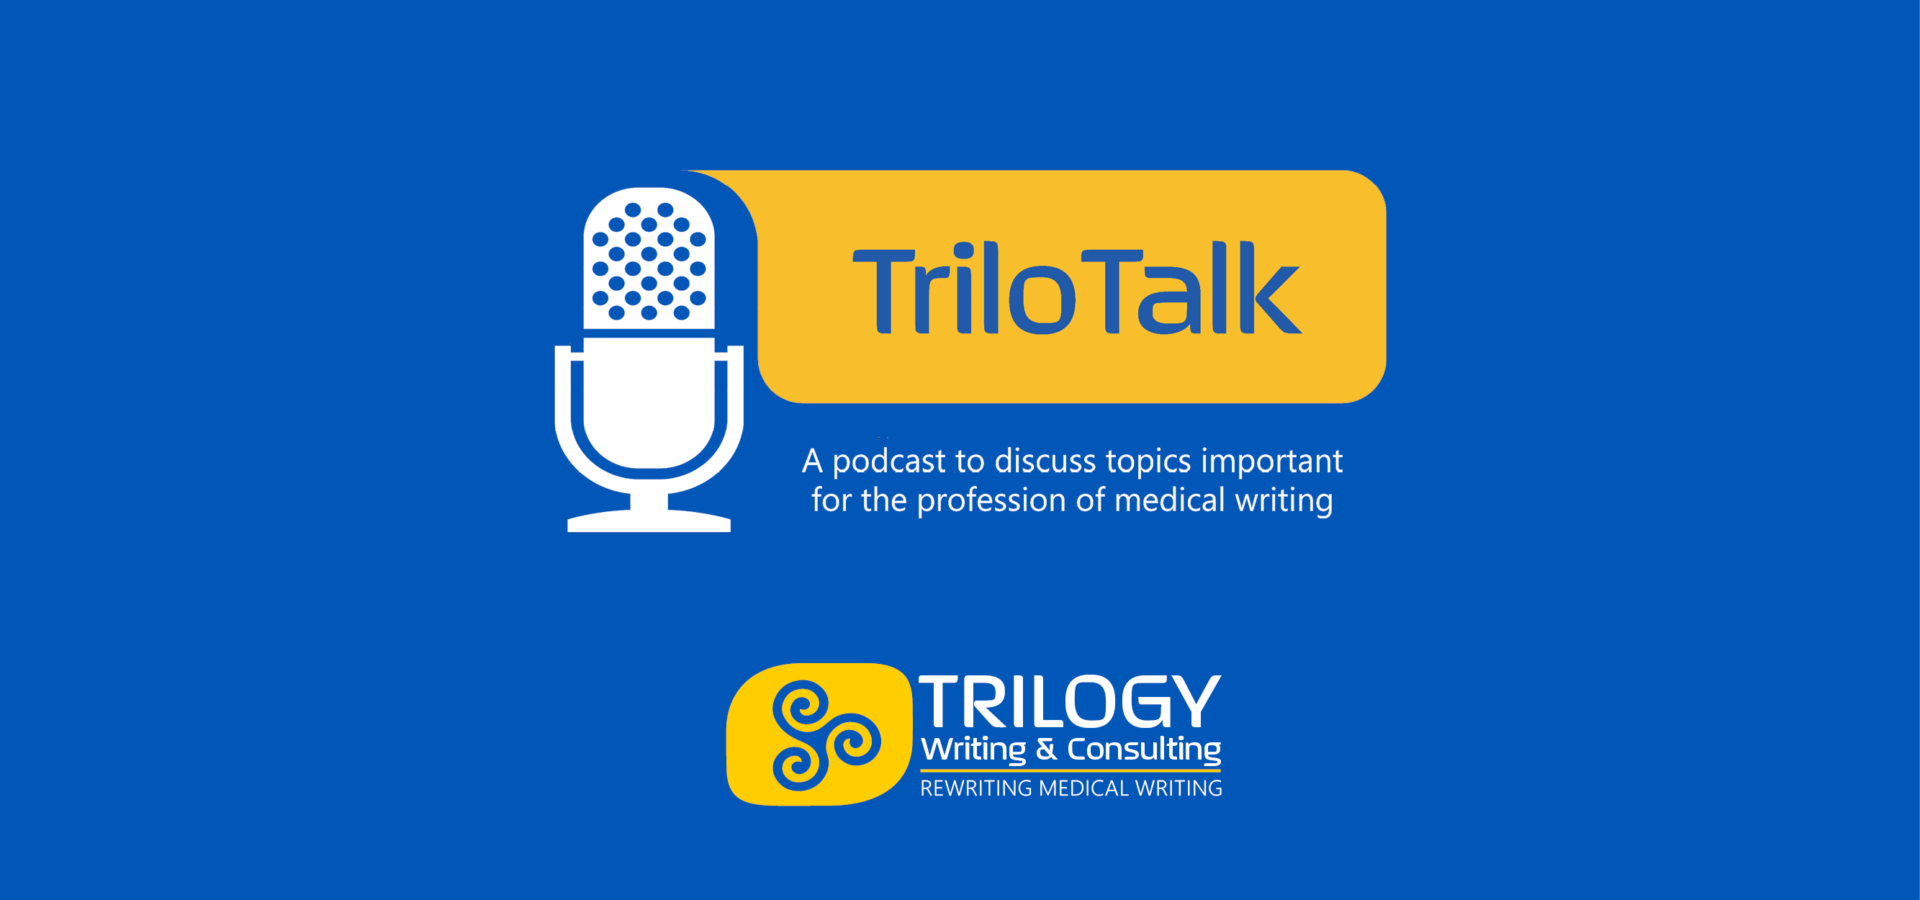 Trilotalk Podcast Header